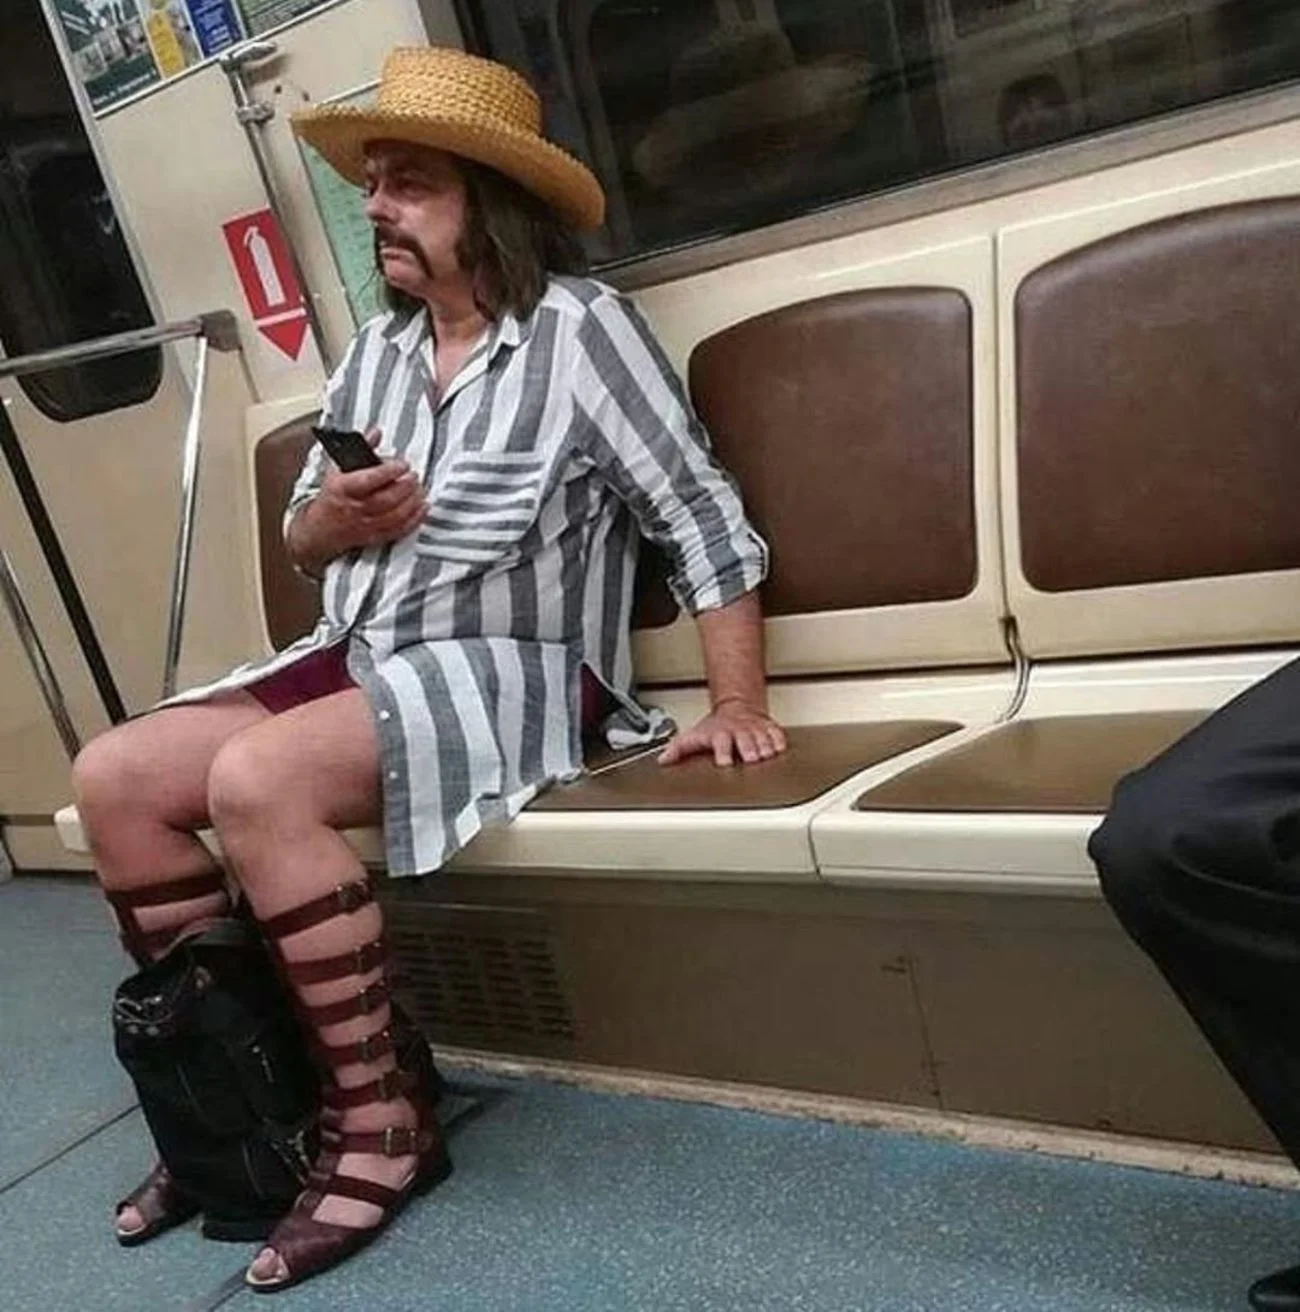 Модники и метро: ТОП-5 самых забавных нарядов, которые немедленно улучшат настроение - фото 469243